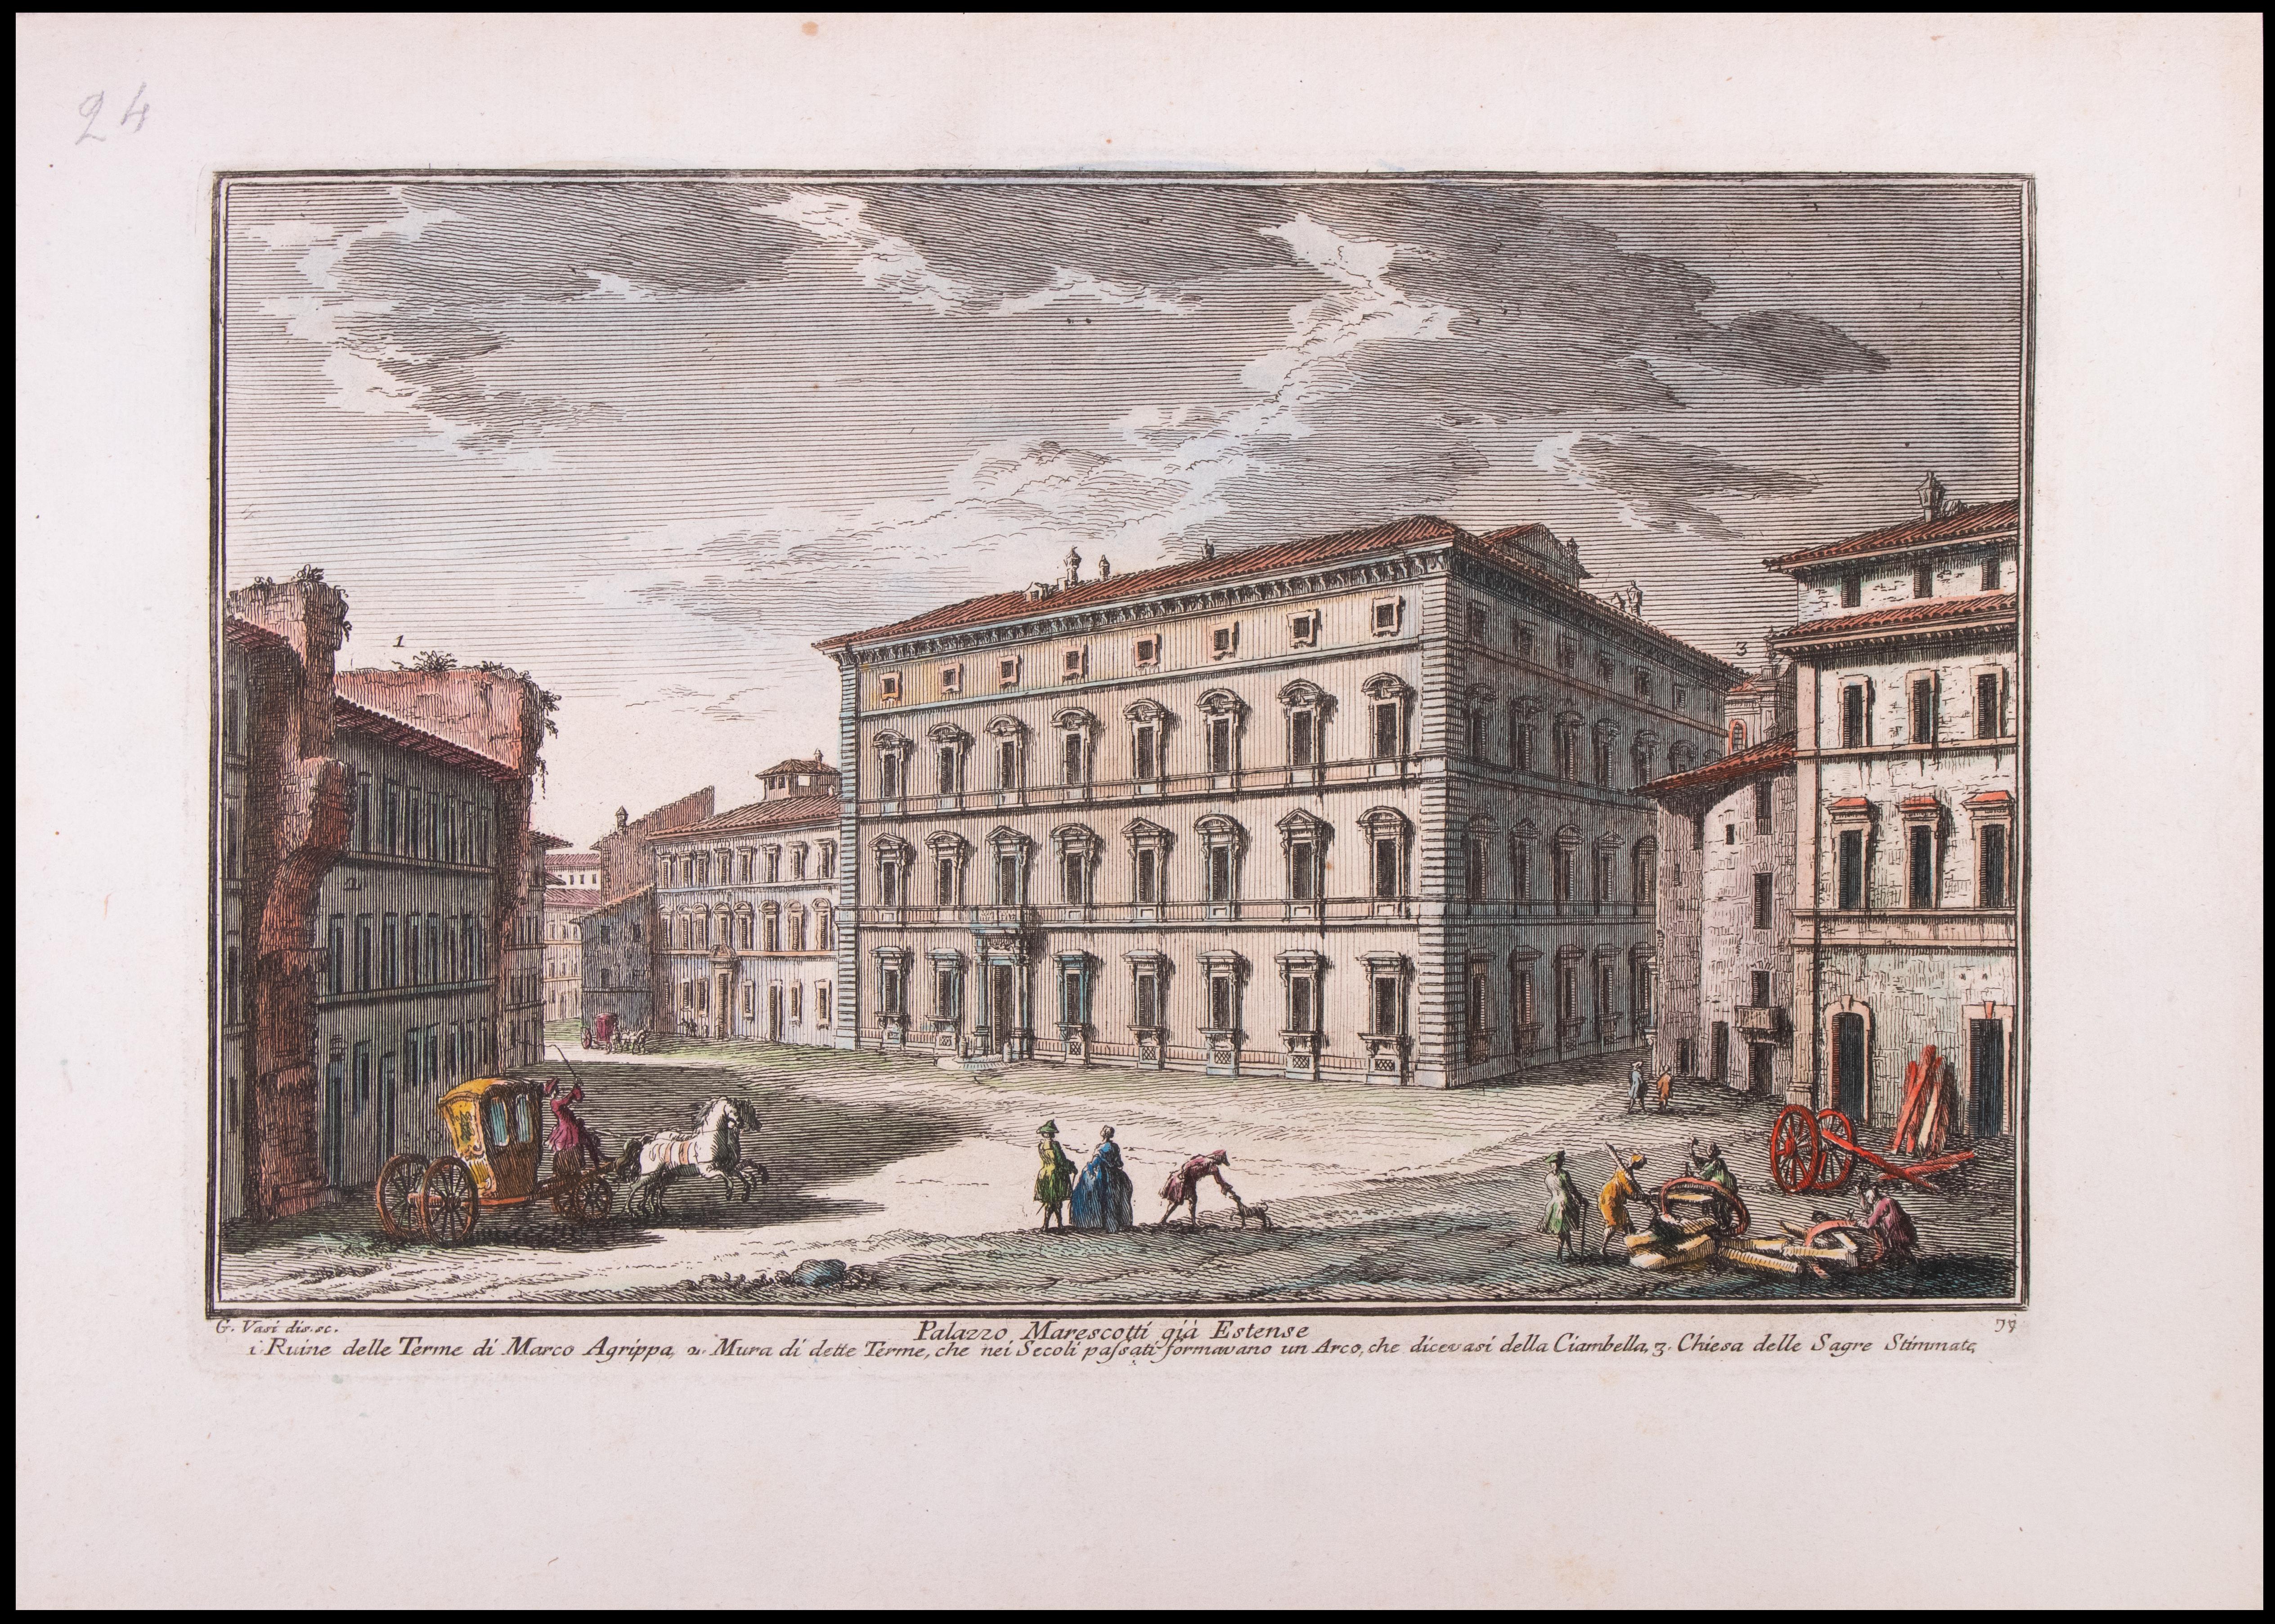 Palazzo Marescotti gia Estense ist eine Originalradierung aus dem späten 18. Jahrhundert von Giuseppe Vasi.

Signiert und betitelt am unteren Rand der Platte. 

Gute Bedingungen bis auf die verbrauchten Ränder.

Giuseppe Vasi  (Corleone, 1710 - Rom,